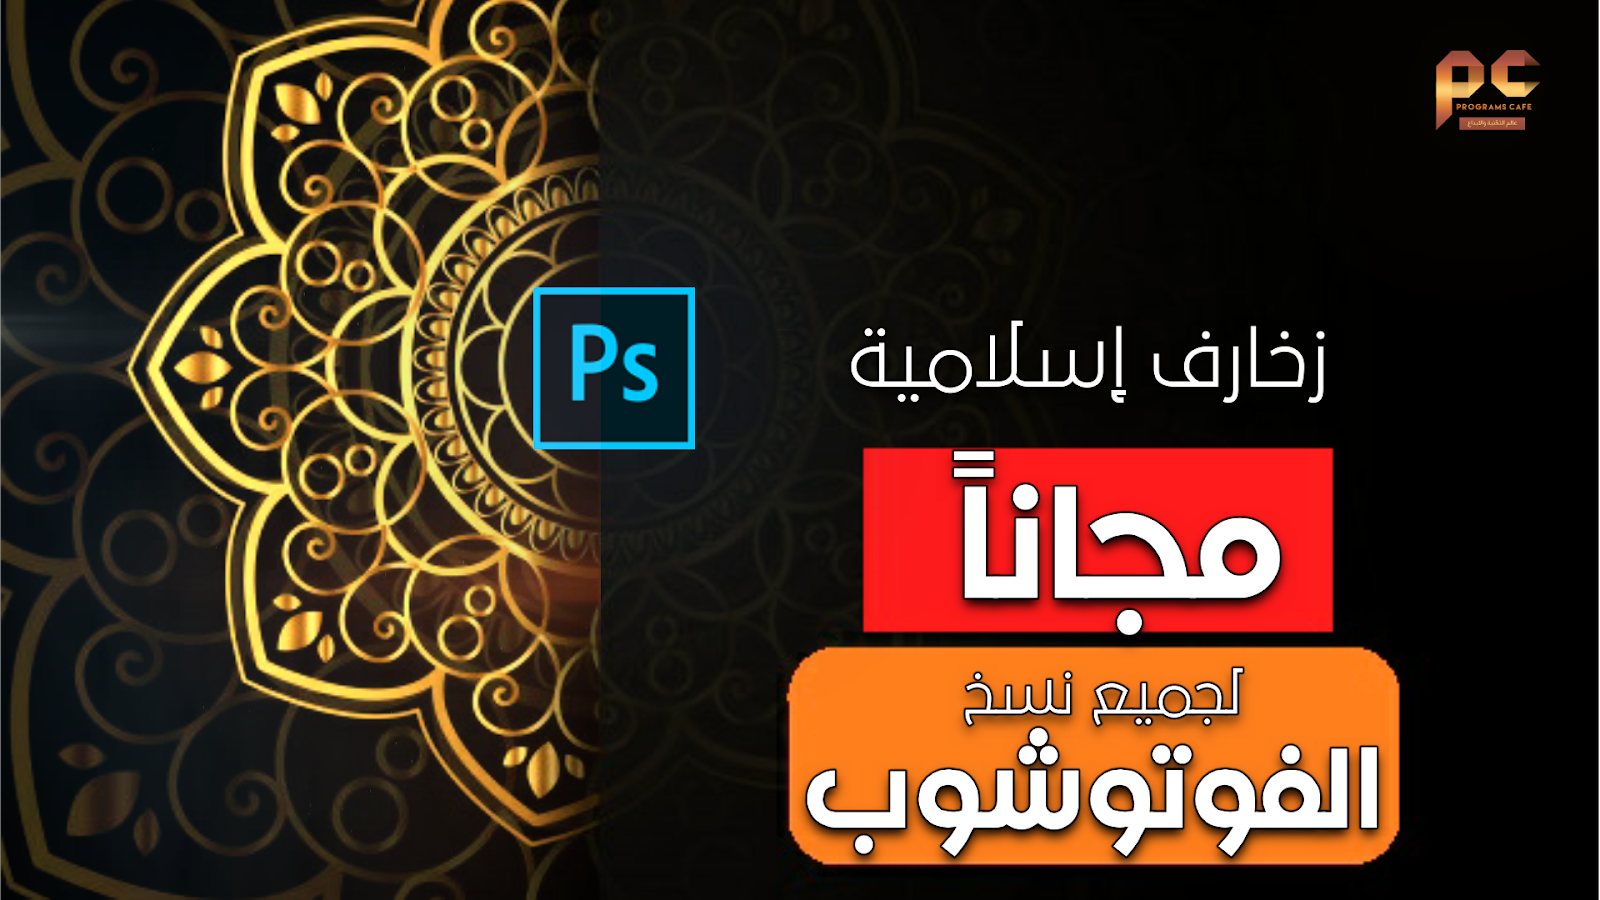 مجانا زخارف إسلامية وأشكال عربية لجميع نسخ الفوتوشوب Free Islamic Shapes For Photoshop